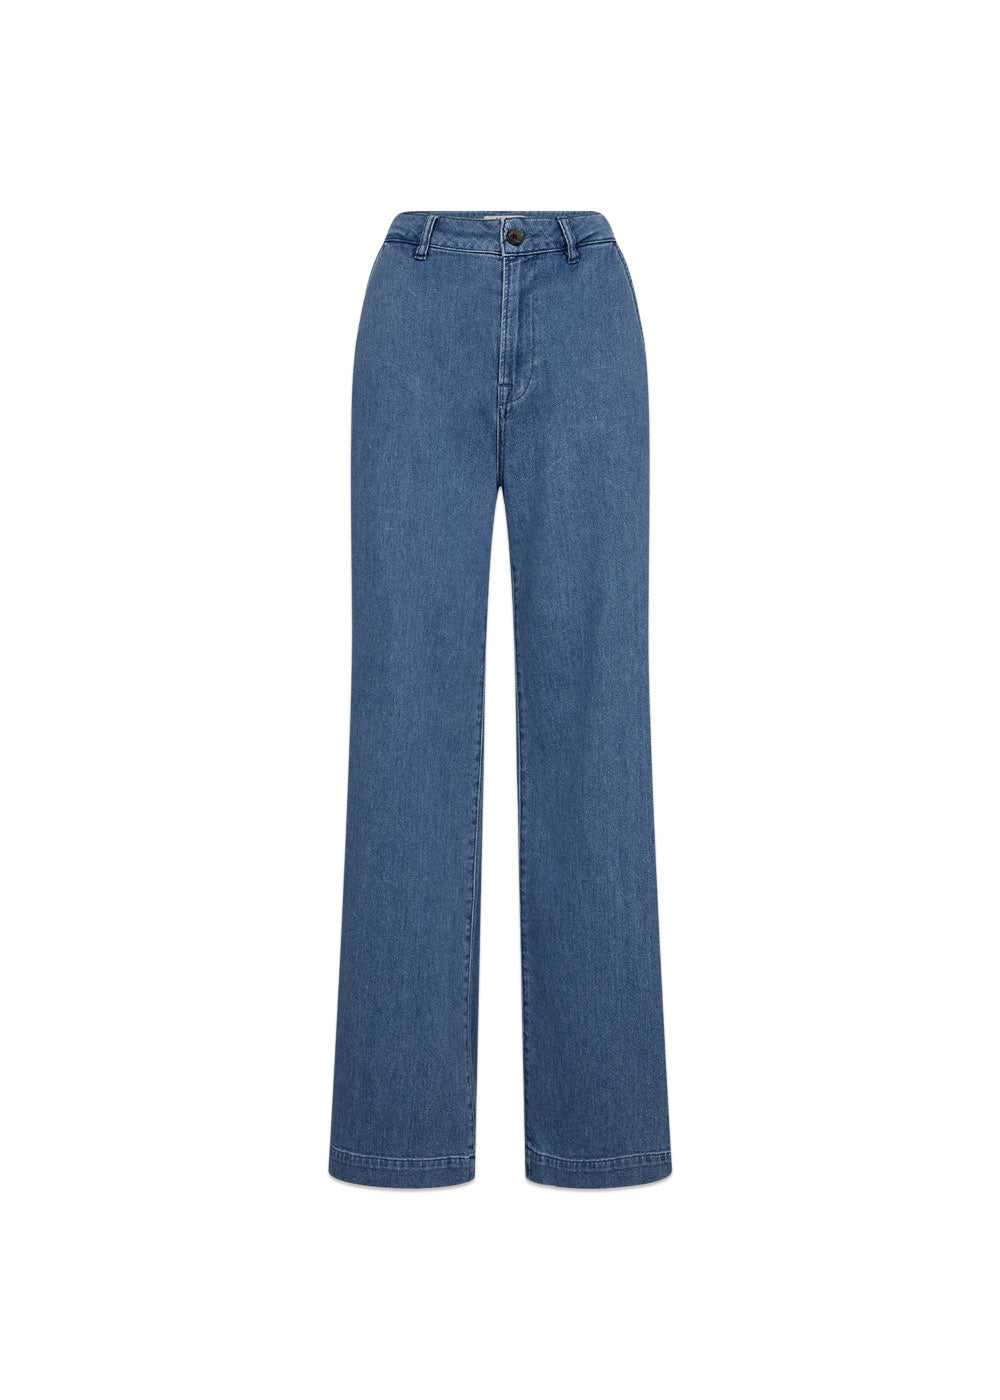 IVY-Augusta French Jeans Wash Garda - Denim Blue